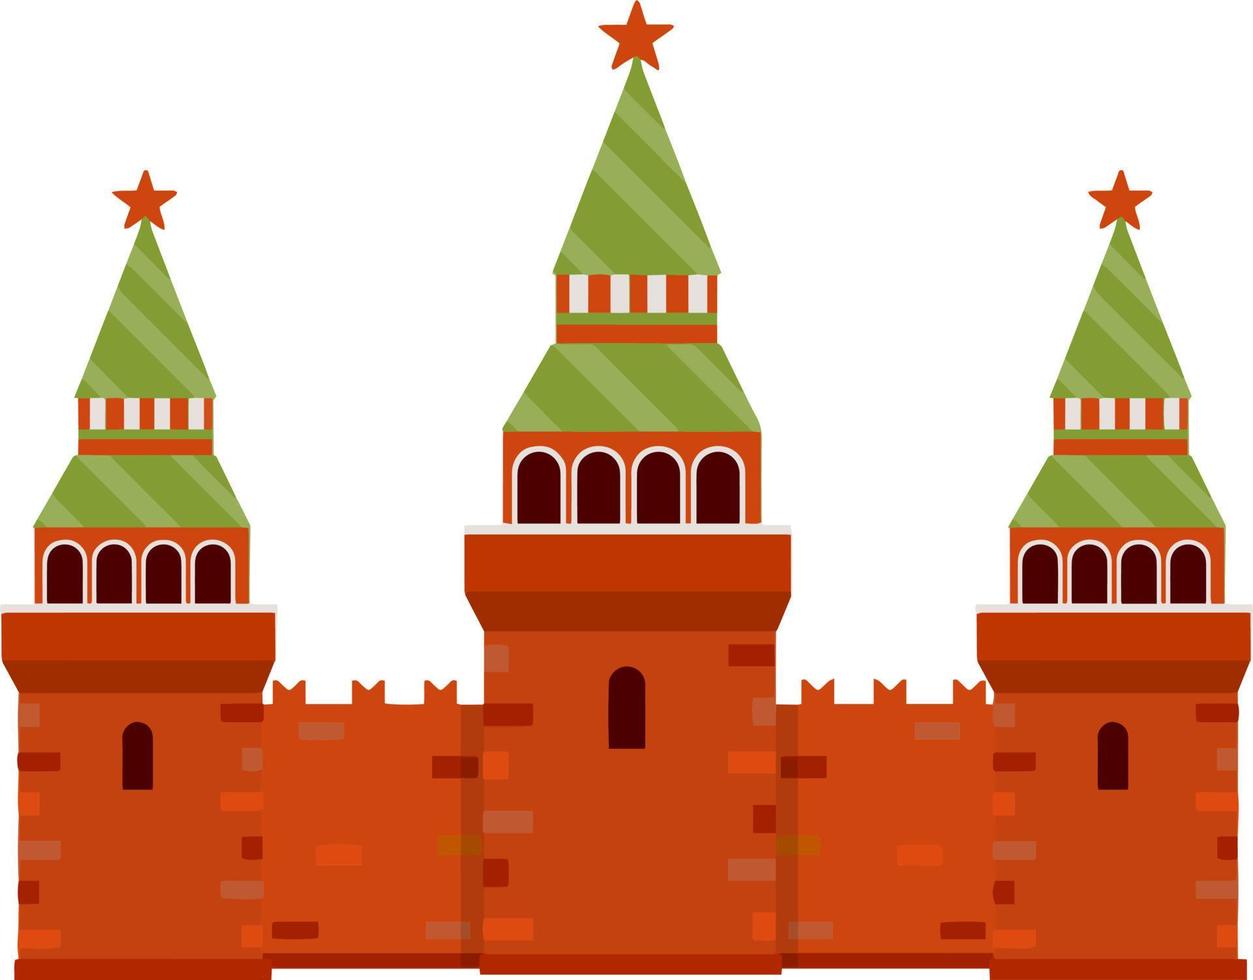 kremlin de moscú destino turístico para la gira a la capital. Fortaleza con torre y muralla. una atracción turística. ilustración plana de dibujos animados vector